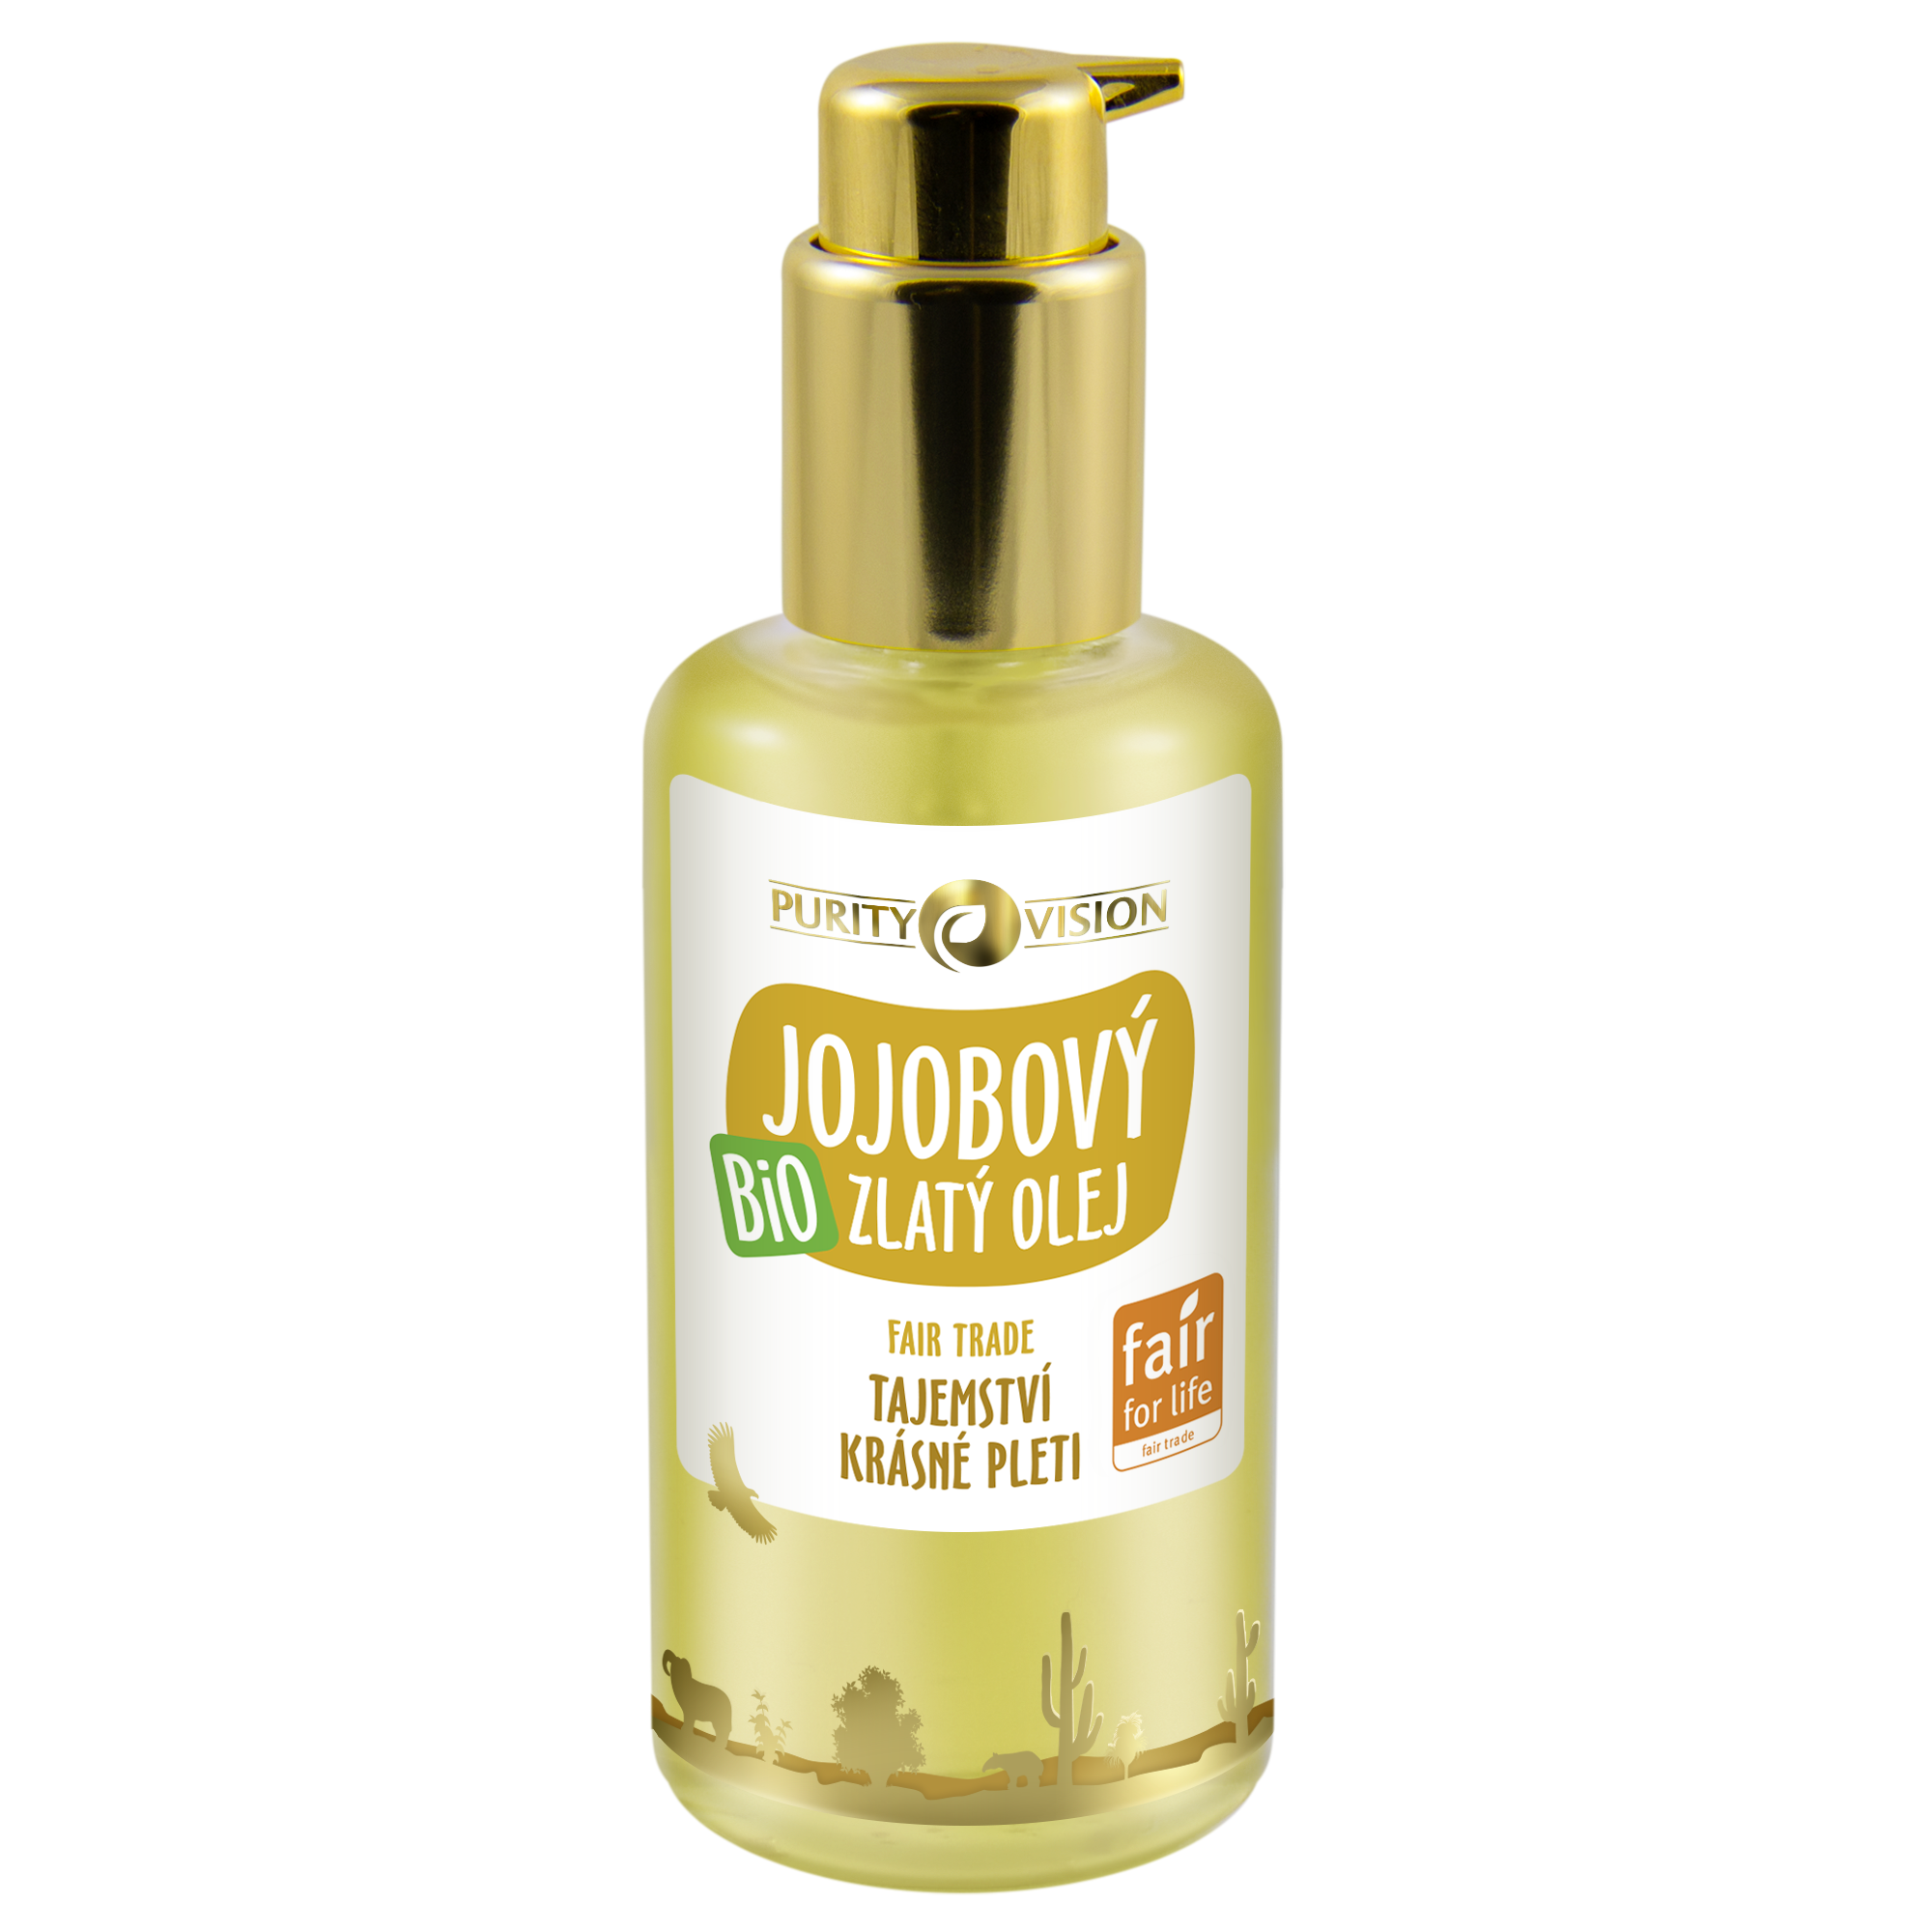 Purity Vision Zlatý jojobový olej BIO (100 ml) - fair trade olej nejvyšší kvality Purity Vision